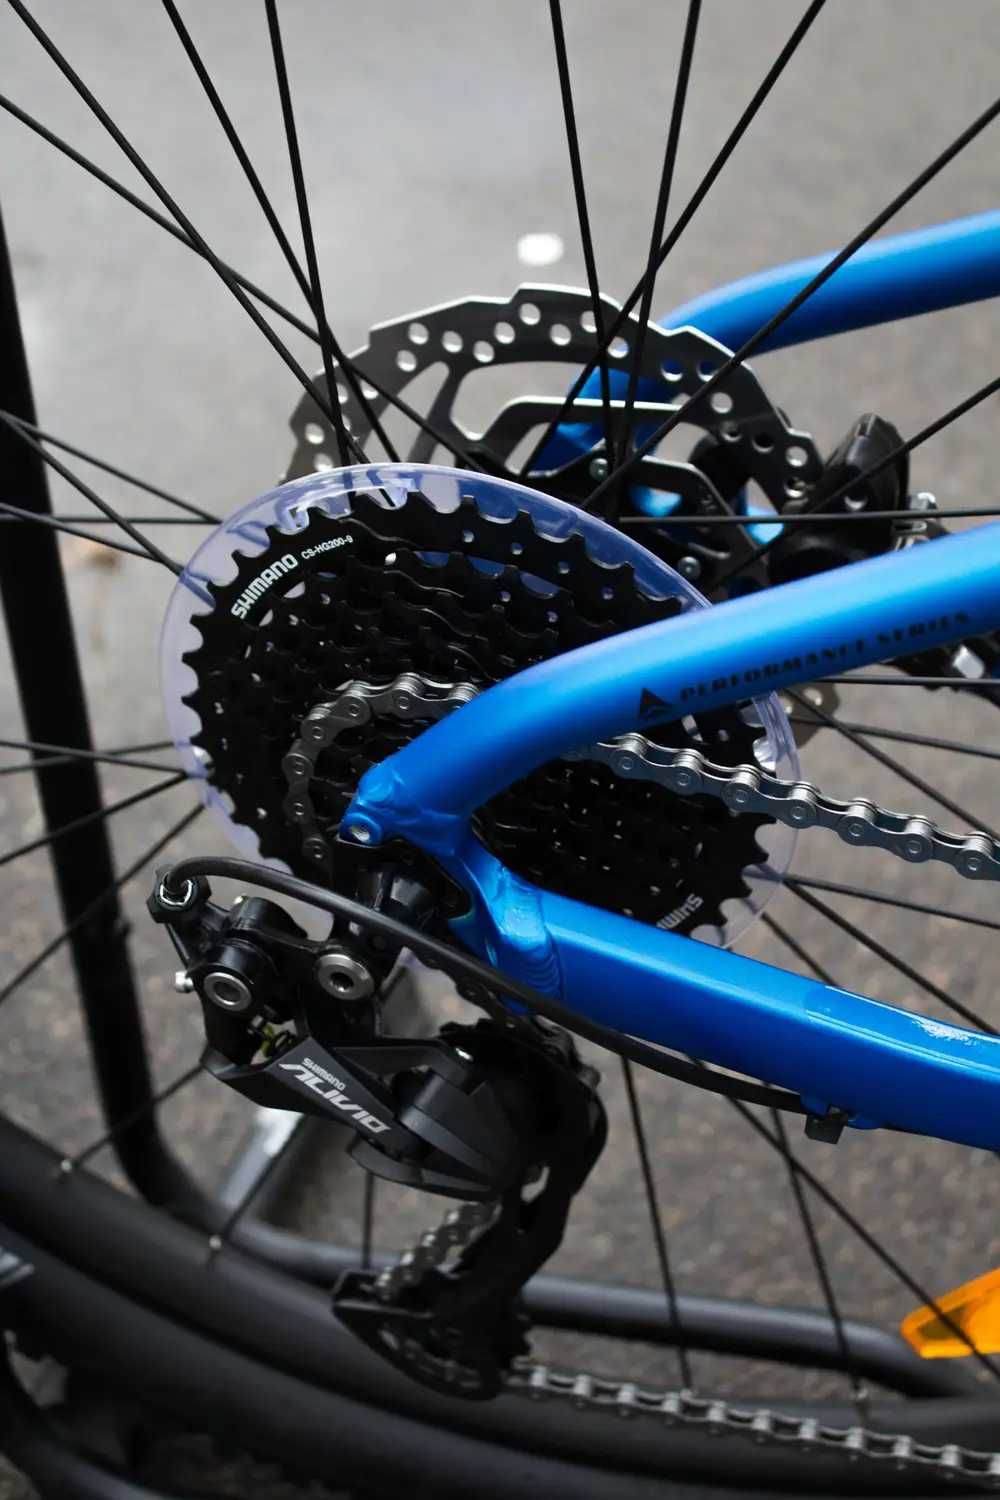 Велосипед гірський Bergamont Revox 4 (2021) - 27.5" M Grey